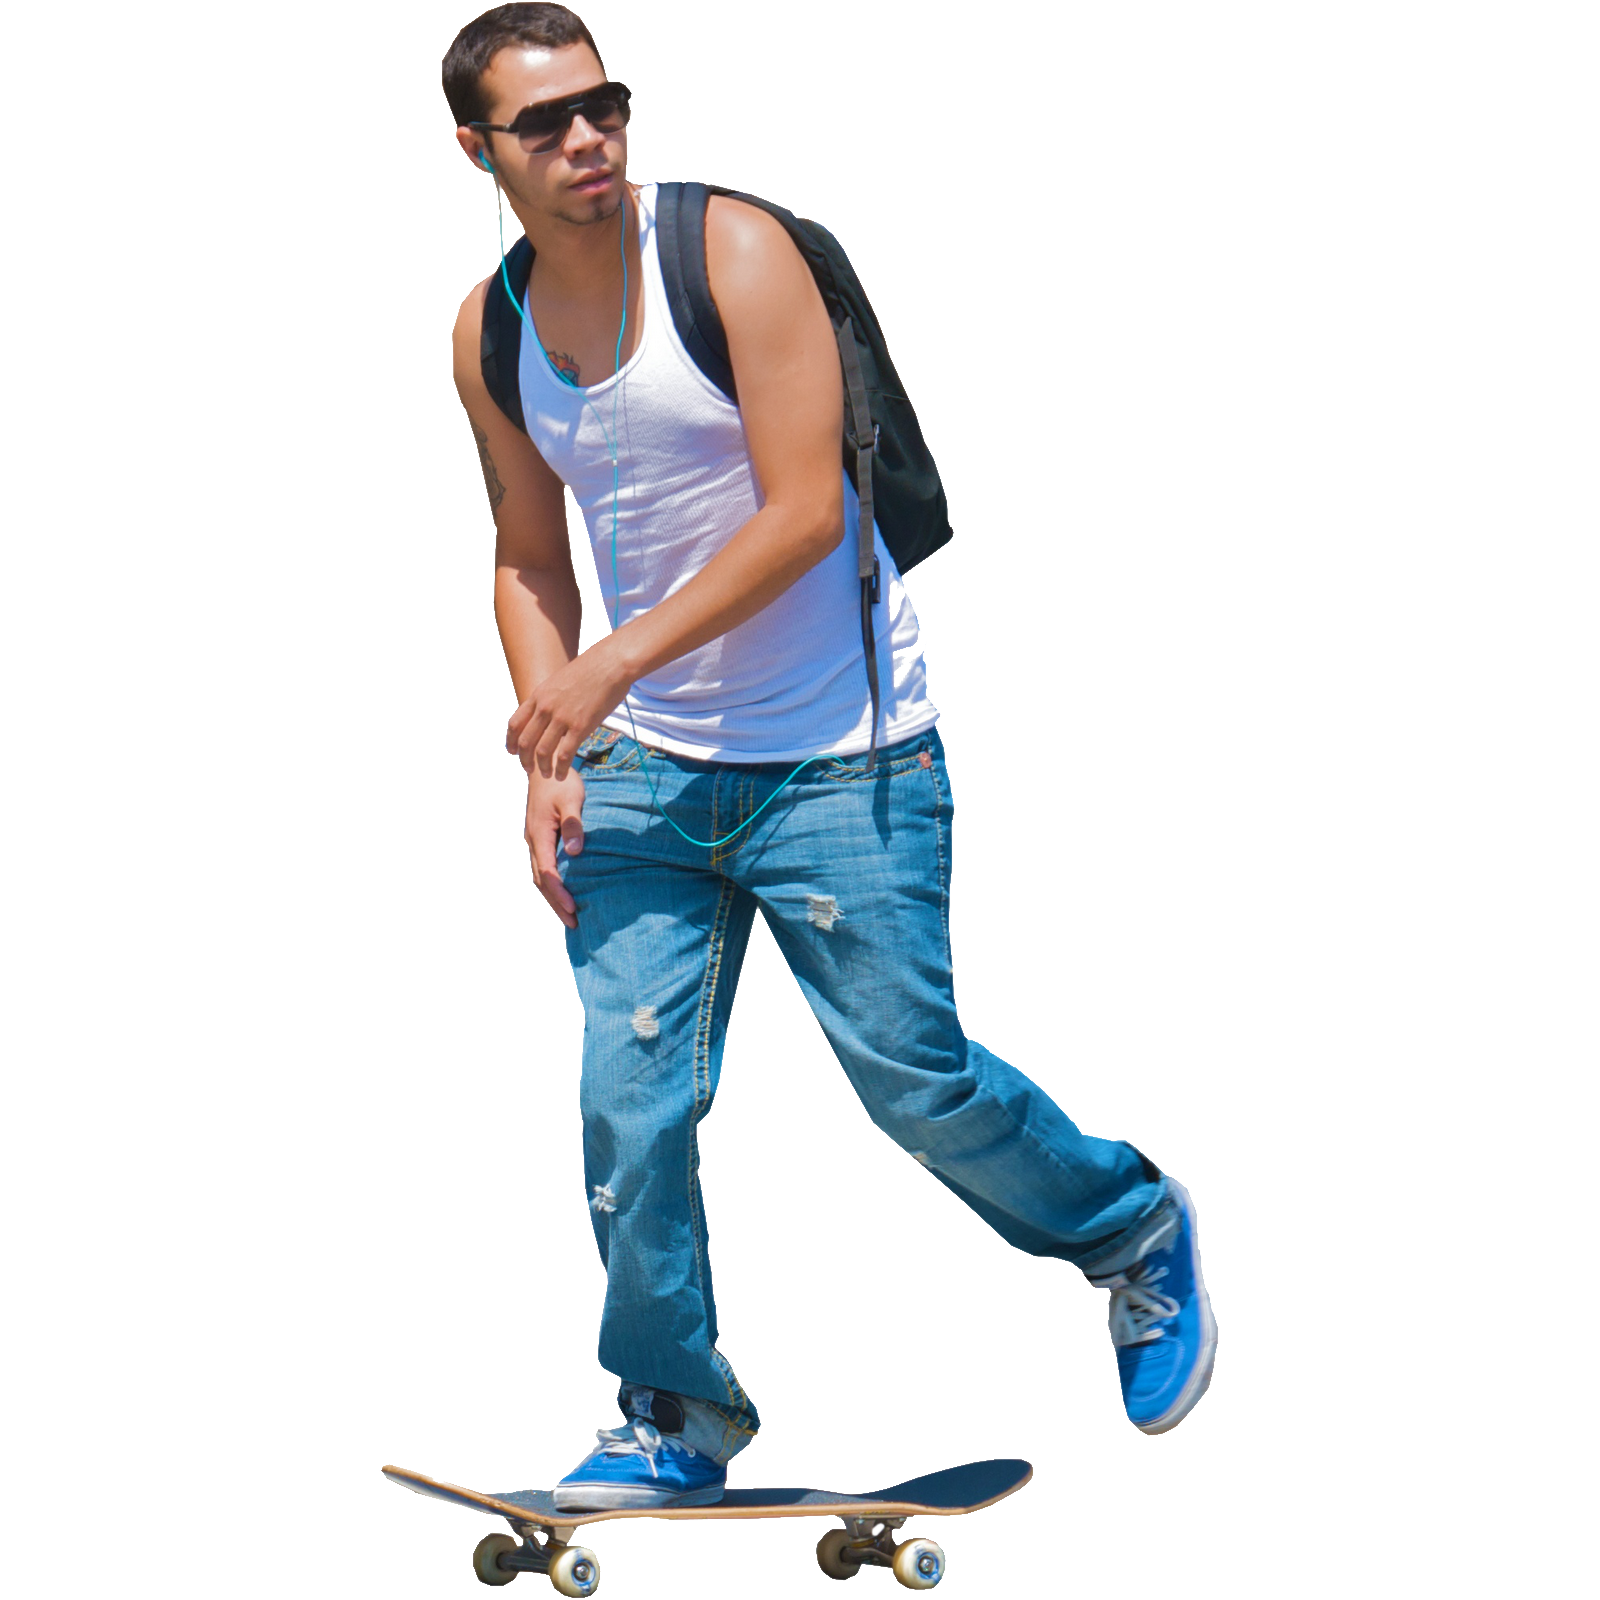 Skateboard Image PNG Image